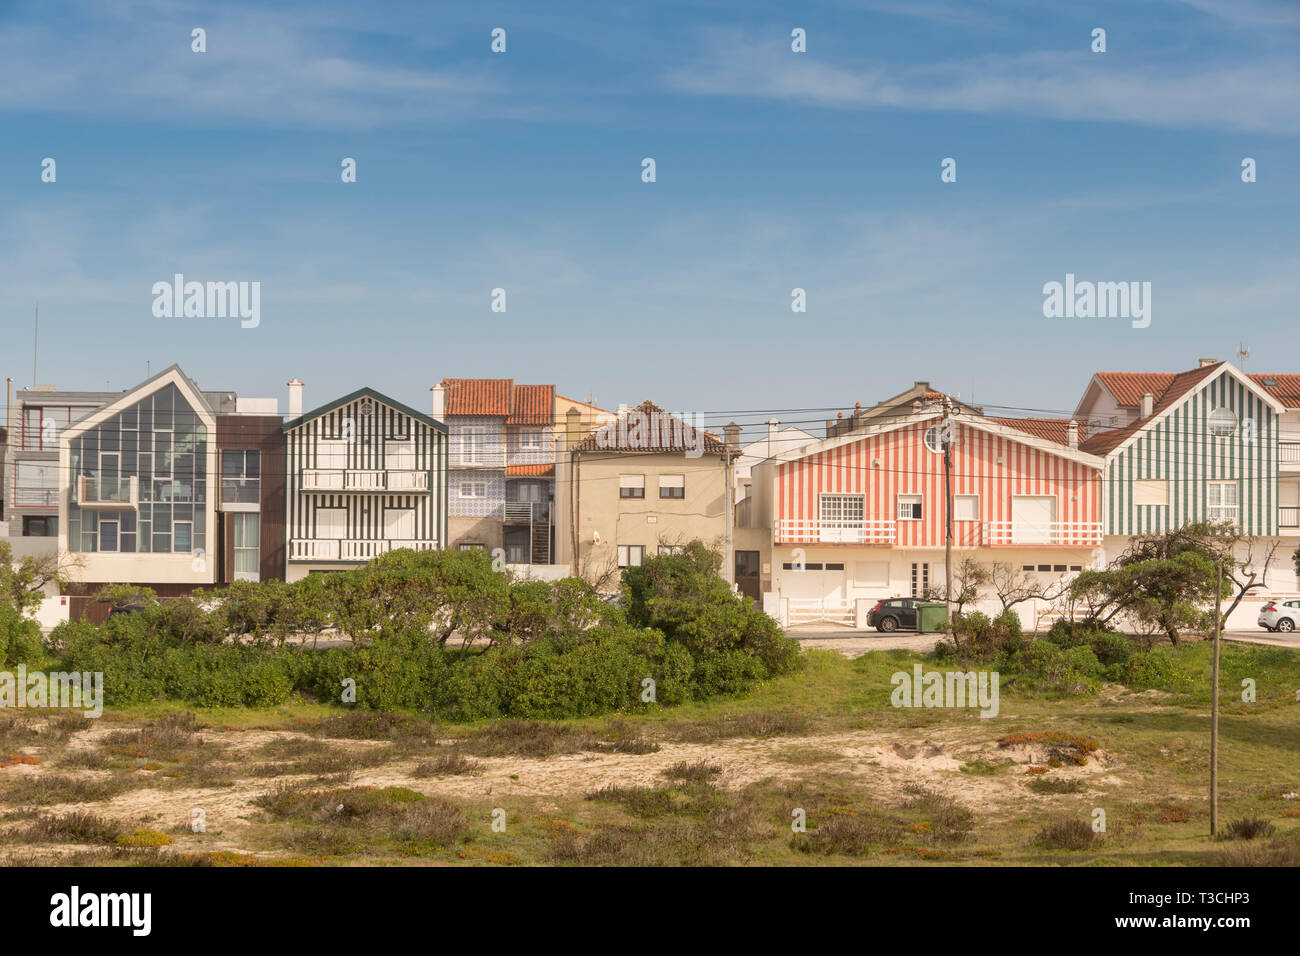 Les maisons de plage à rayures bonbon de Costa Nova, Aveiro, Portugal Banque D'Images